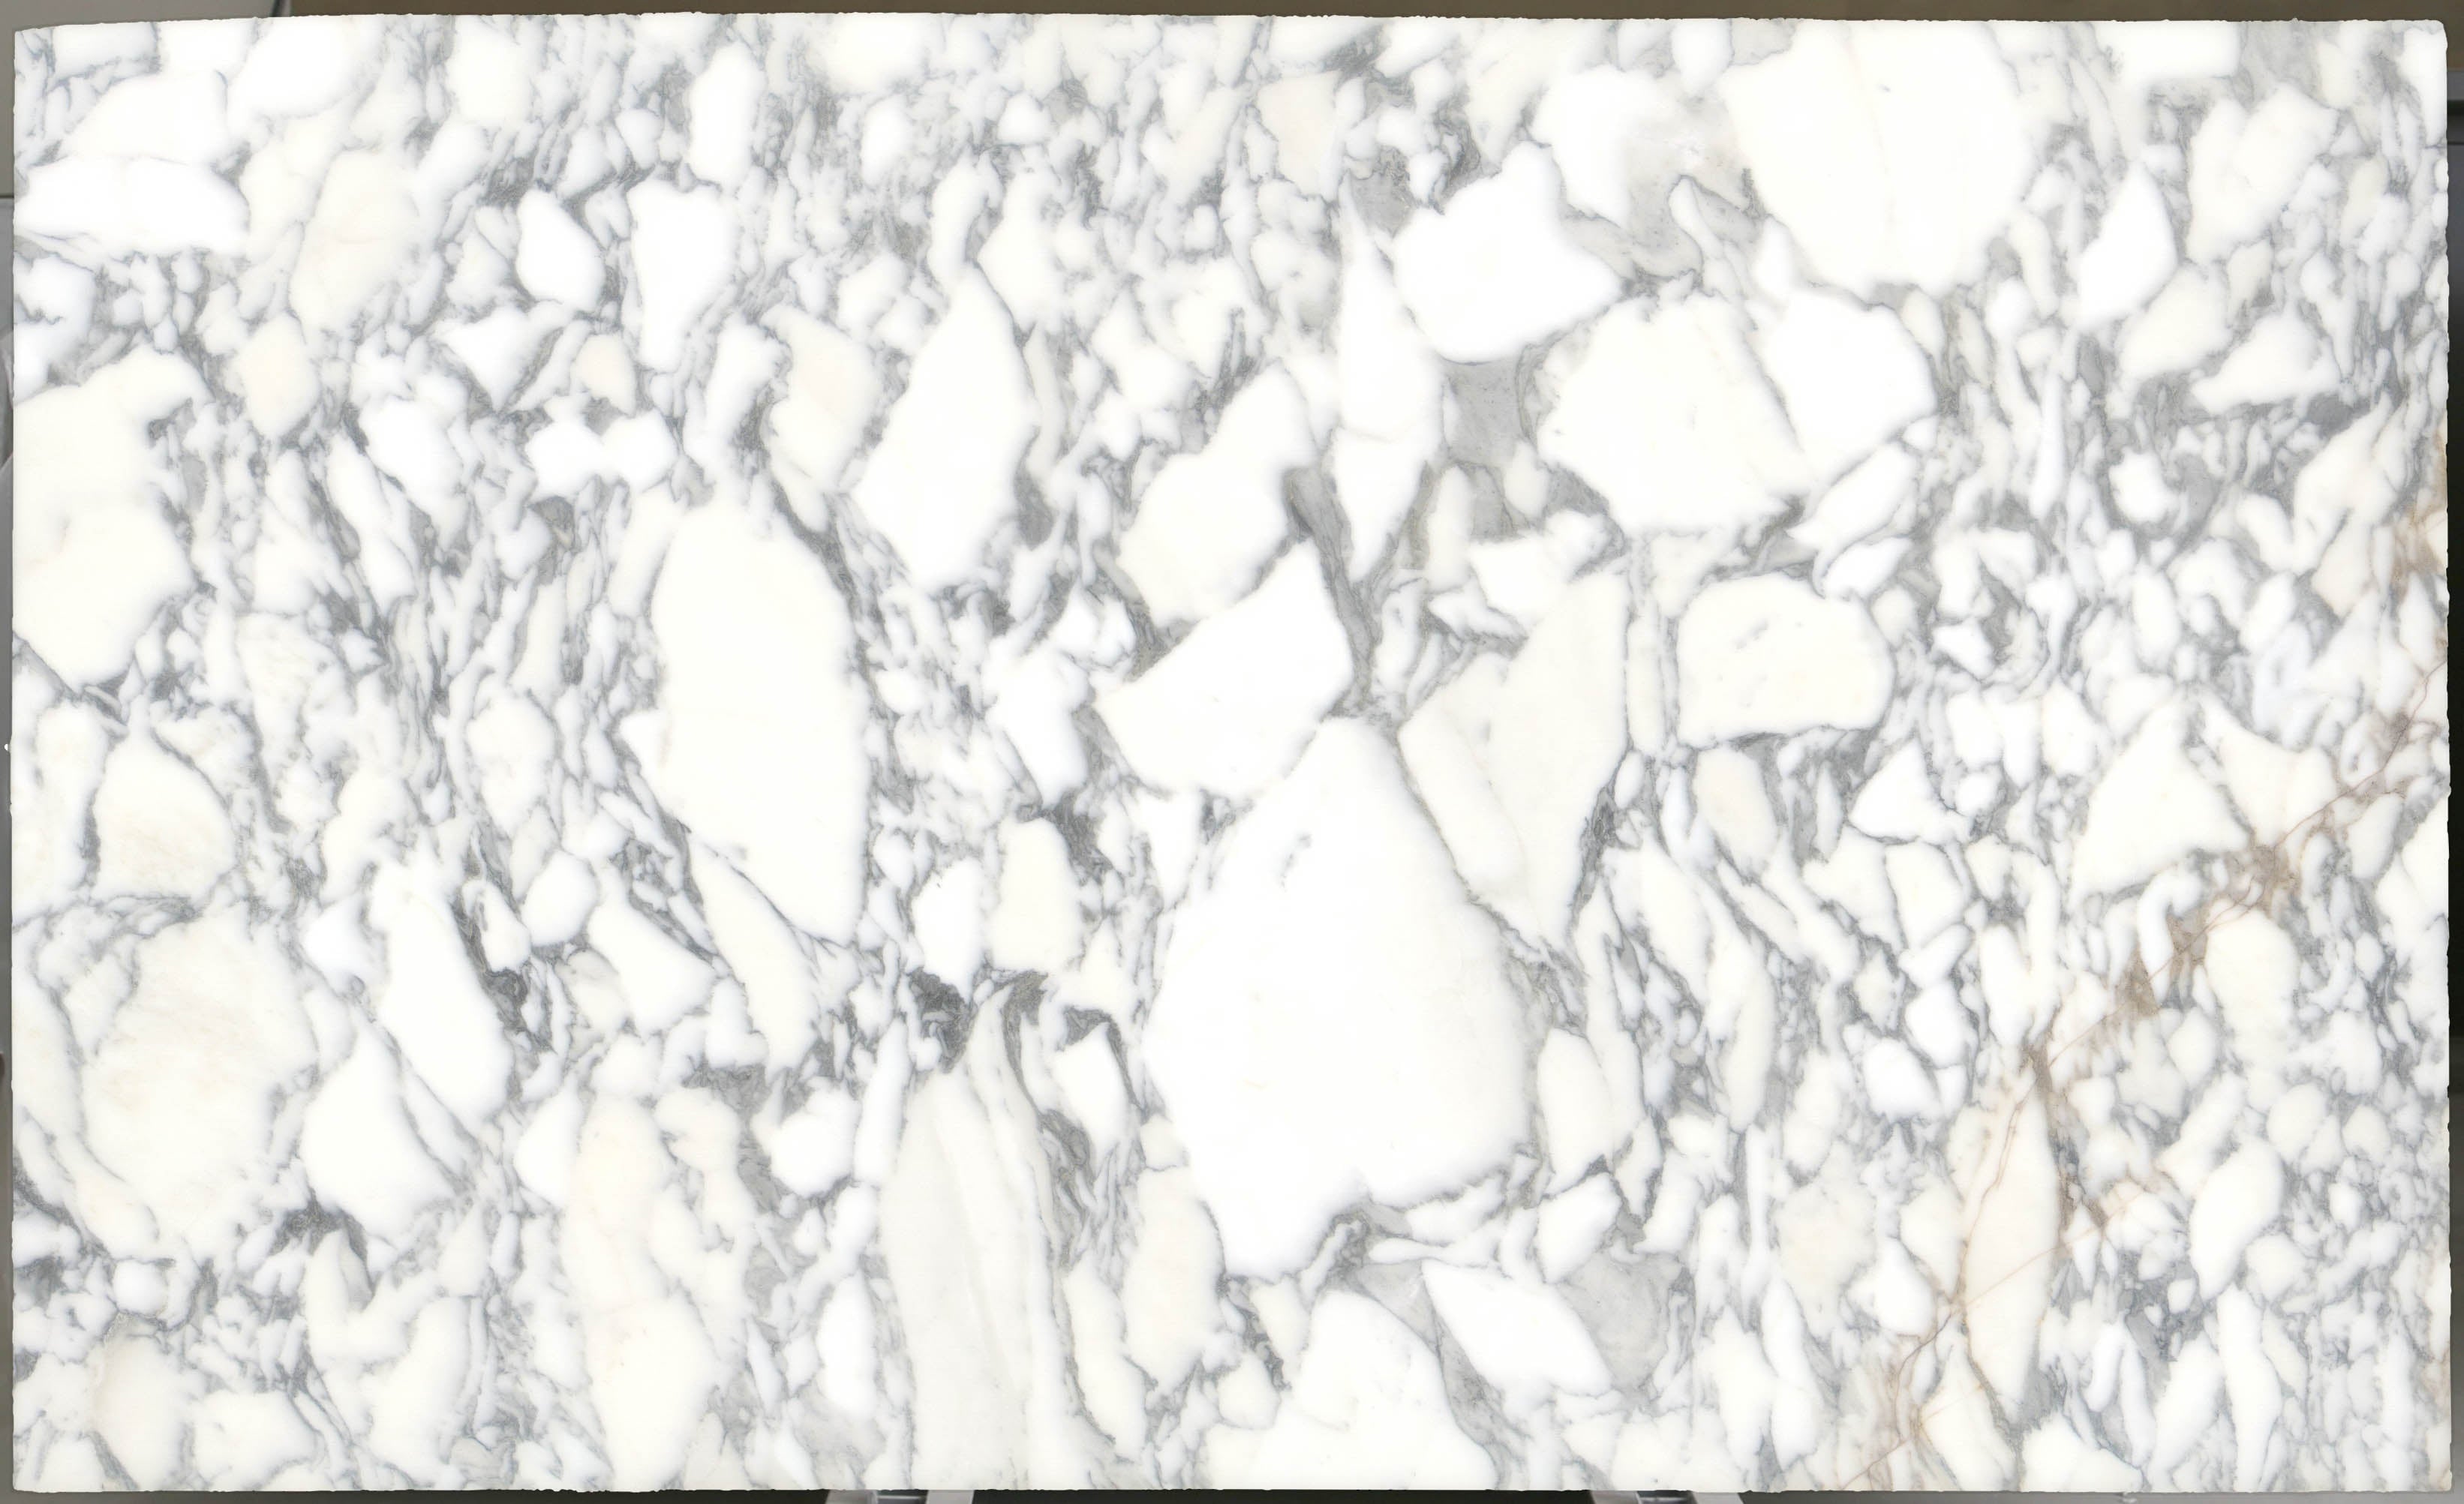  Arabescato Corchia Marble Slab 3/4 - 4026#25 -  VS 74x123 